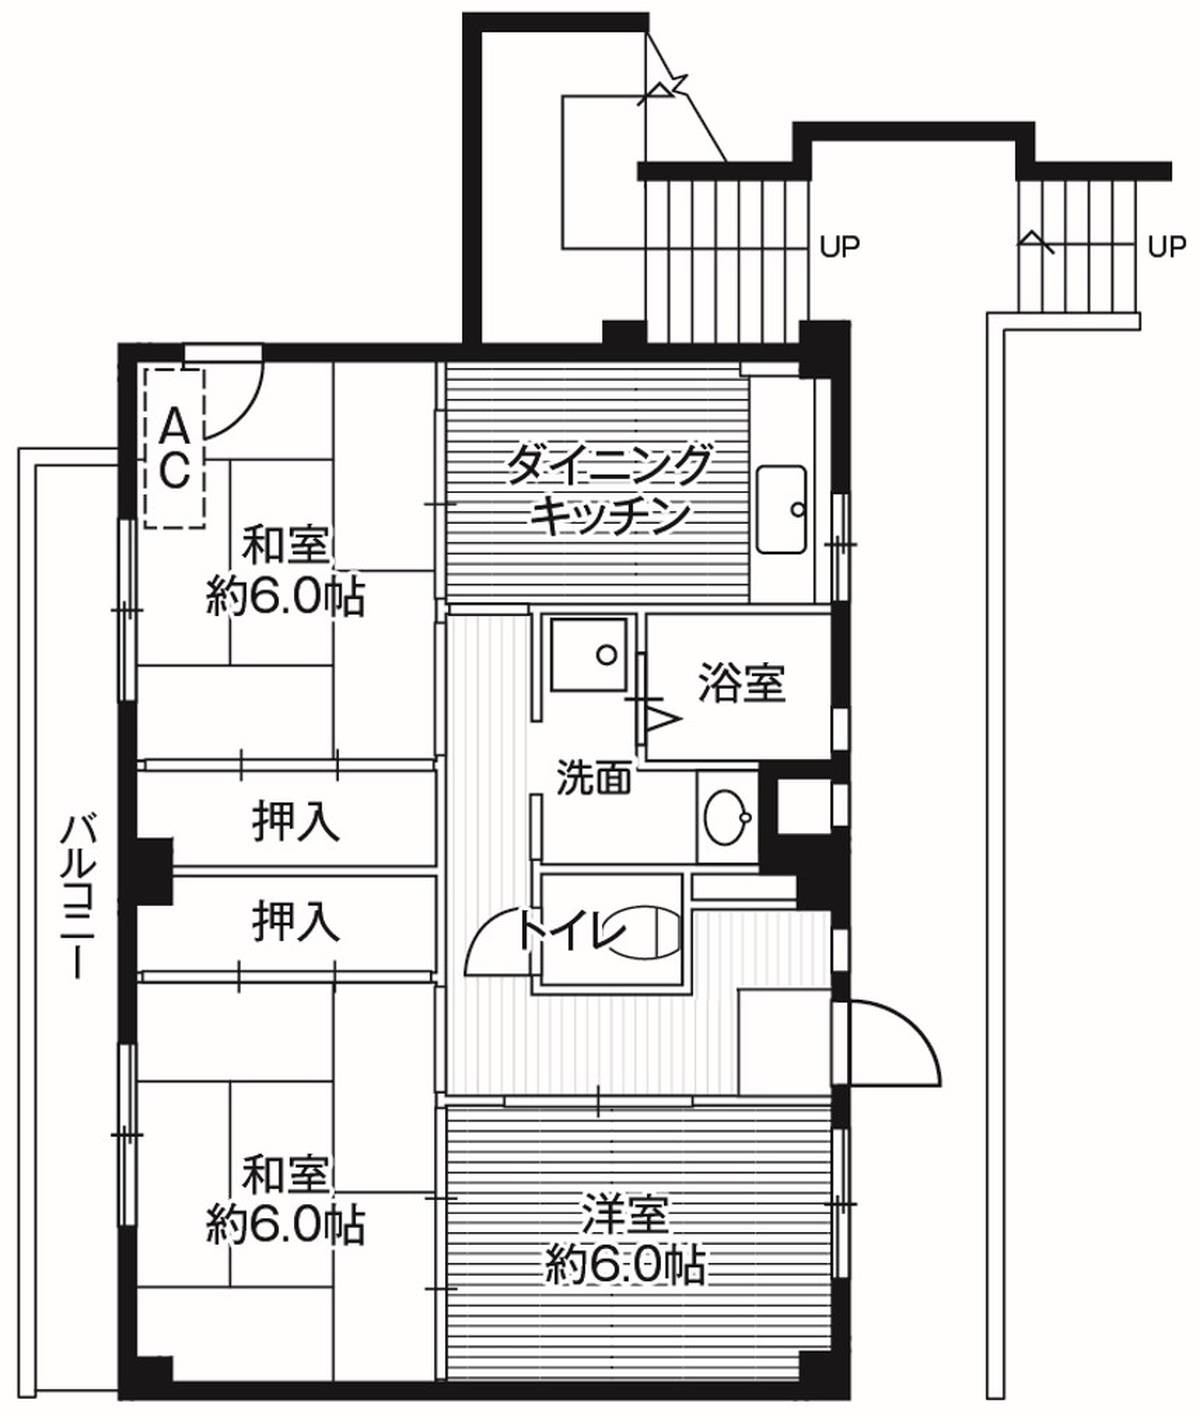 3DK floorplan of Village House Akita in Akiruno-shi